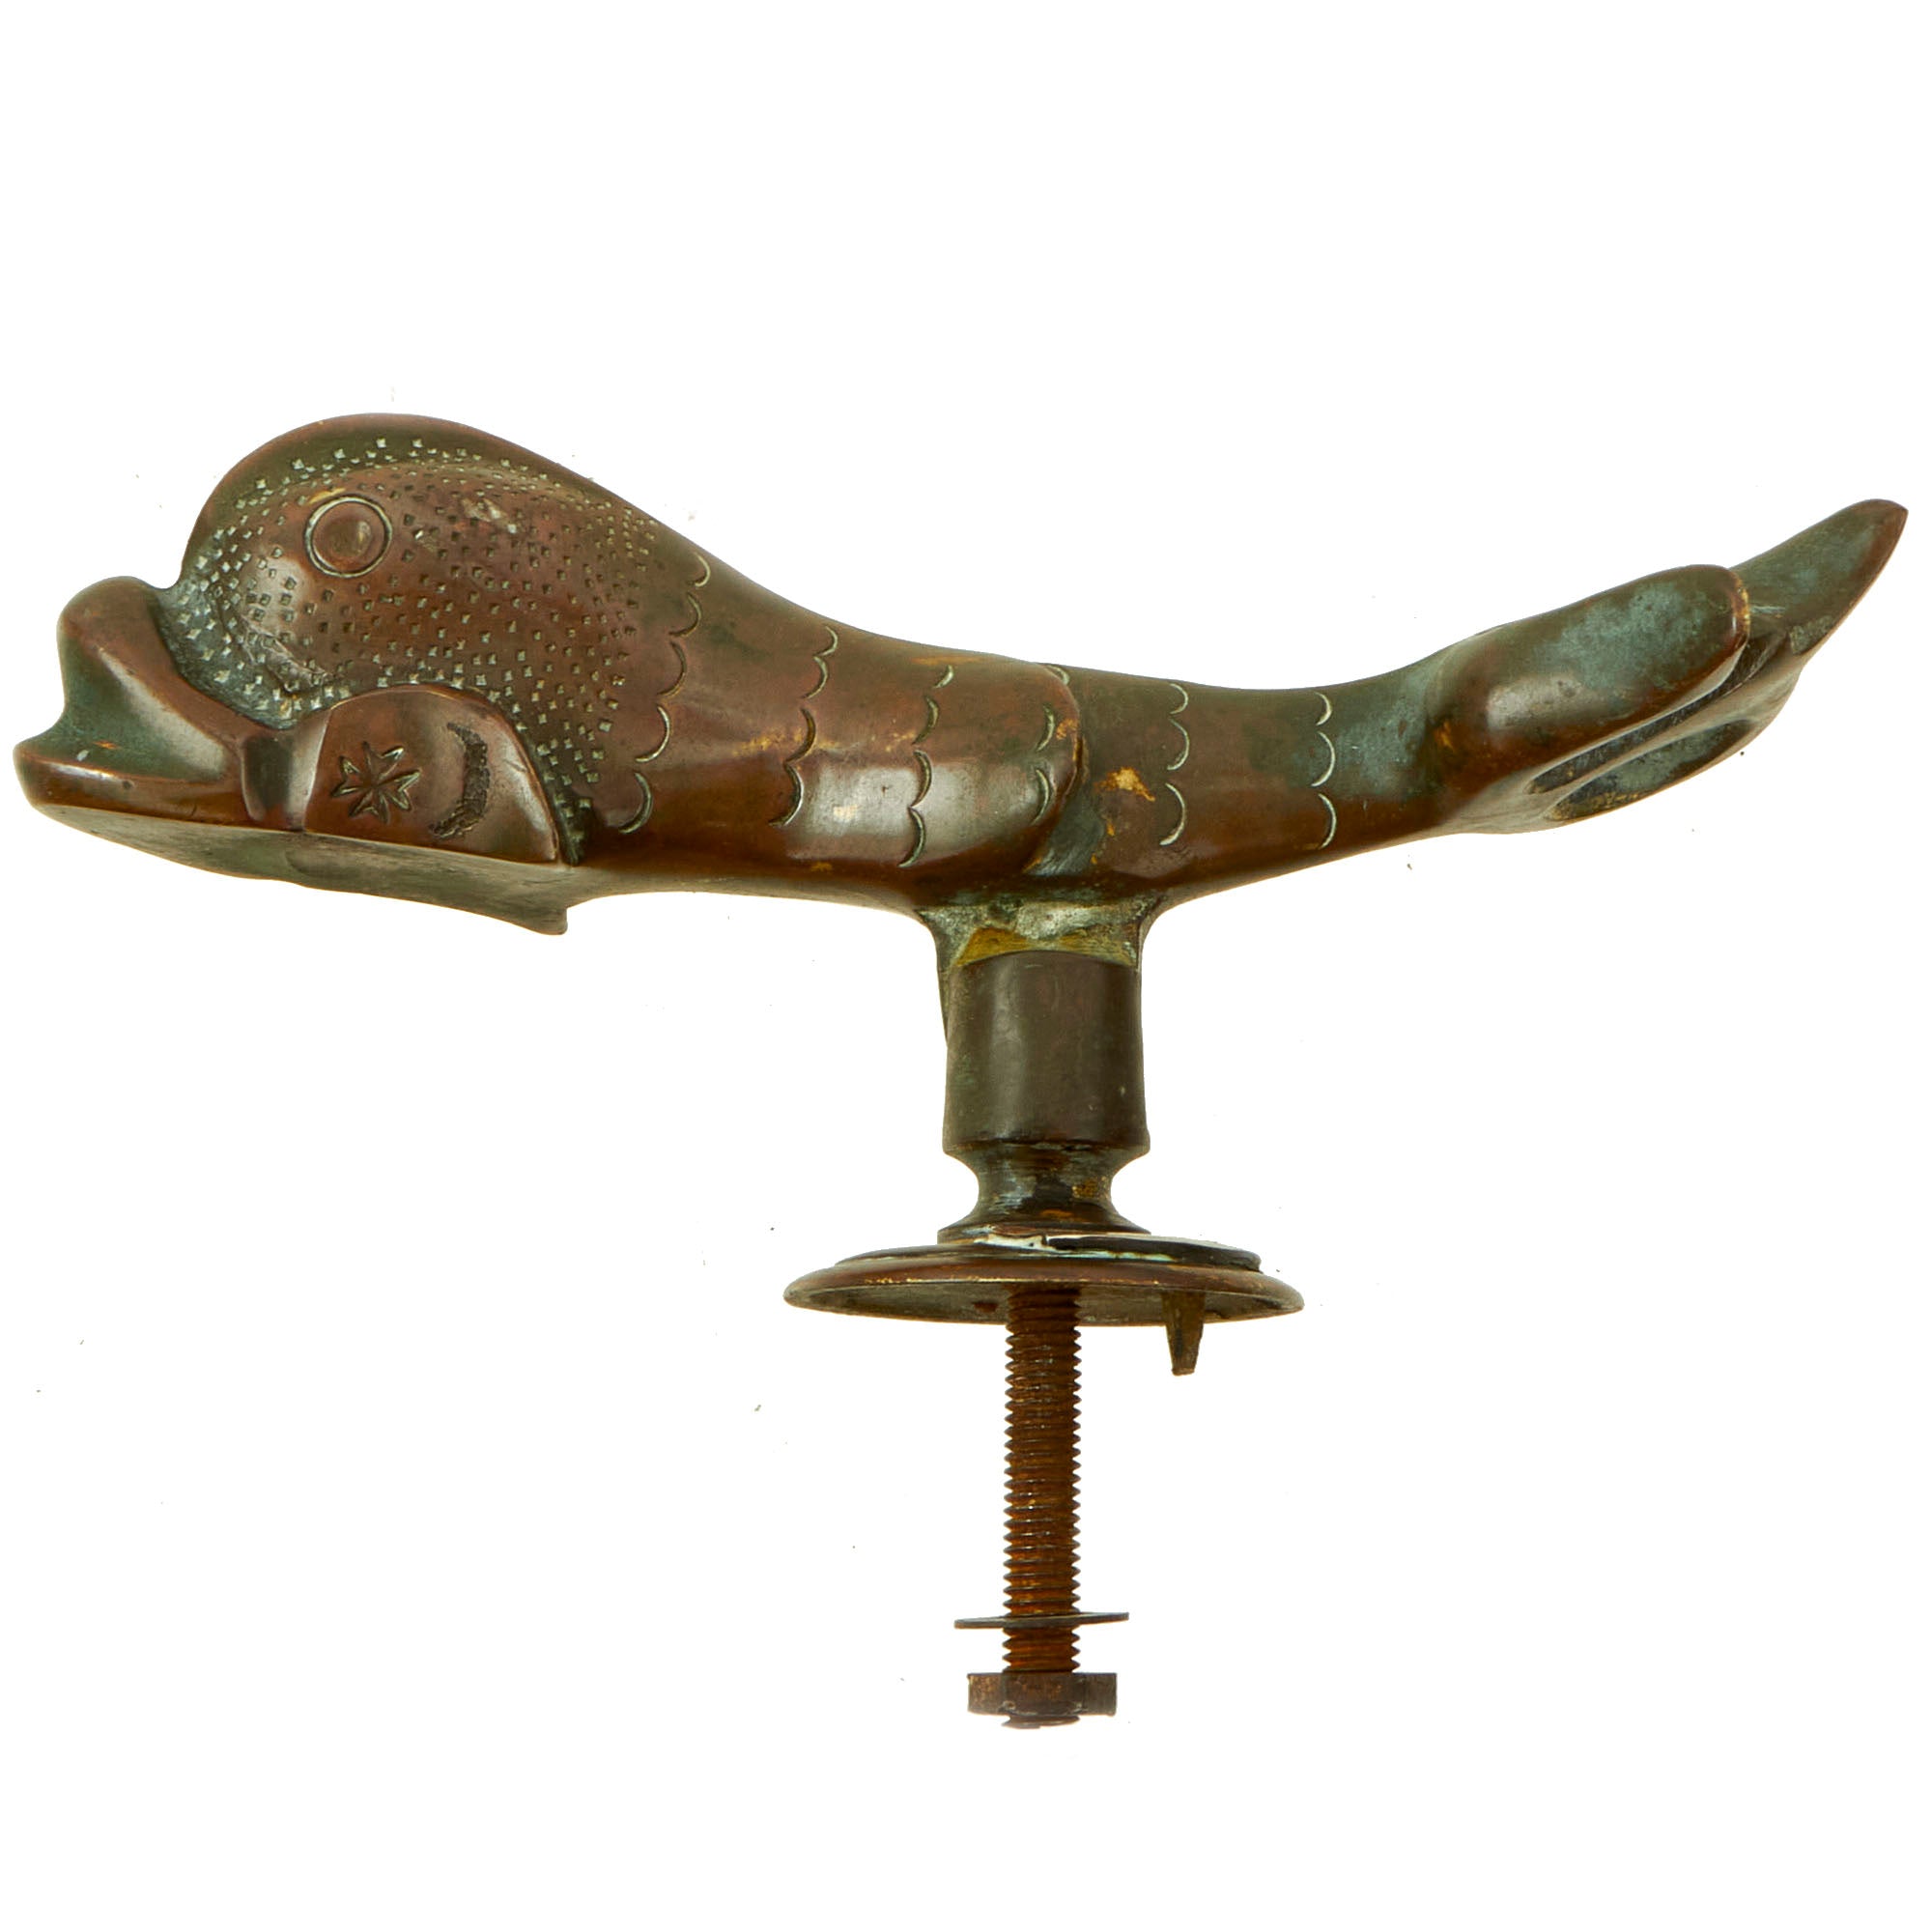 Original U.S. Civil War Era Bronze “Sea Monster” Door Knocker with